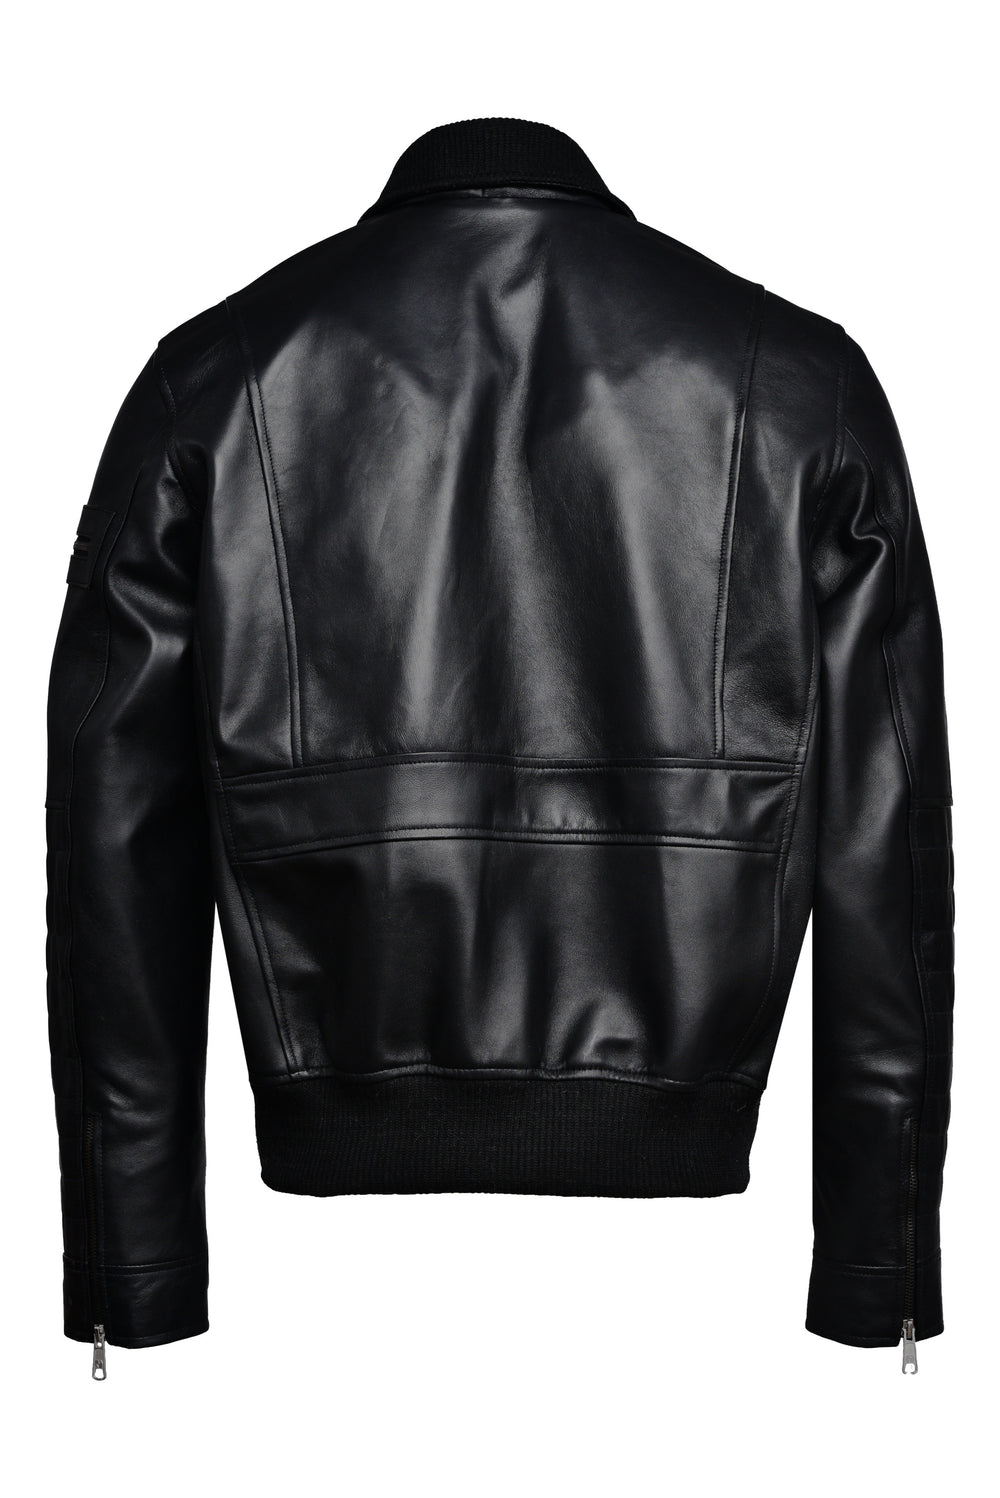 Bomber Black Leather Jacket Australia